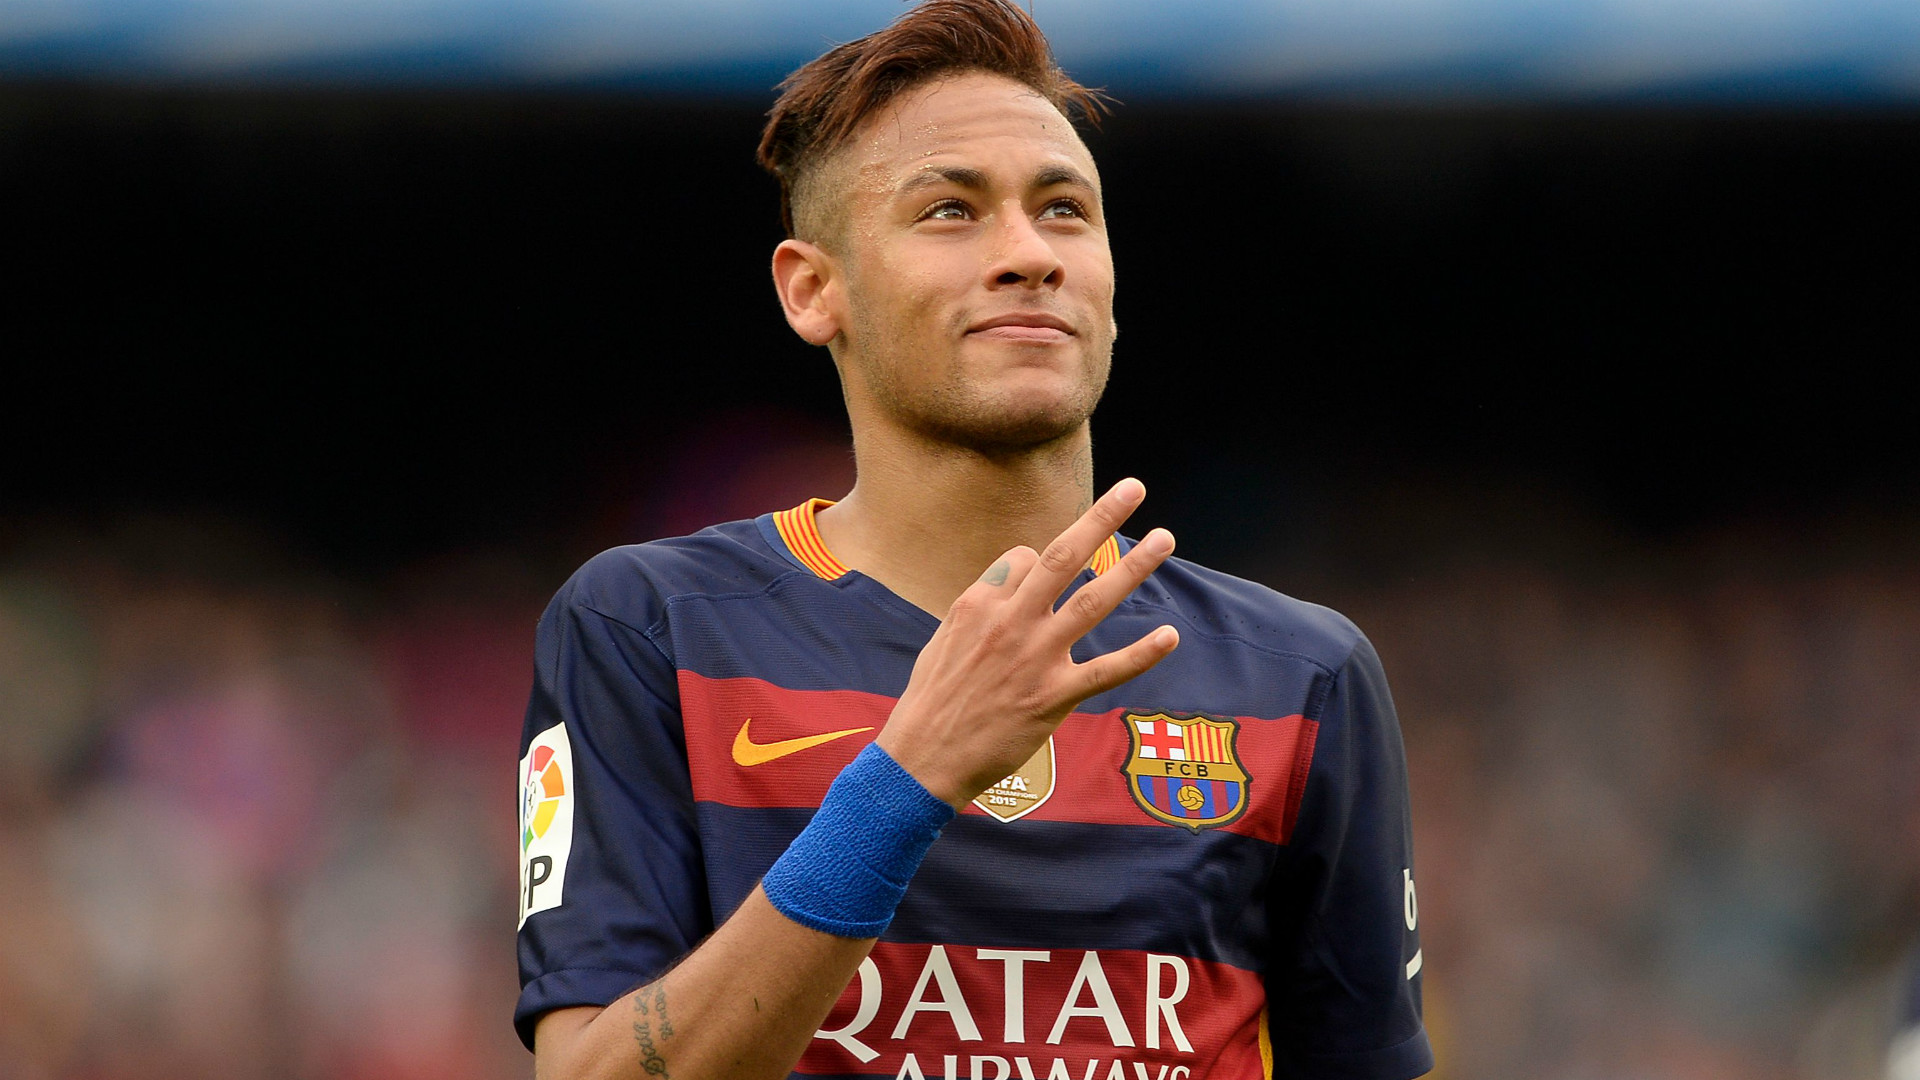 barcelona-neymar-2016-soccer-in-olympic-wallpaper_1.jpg